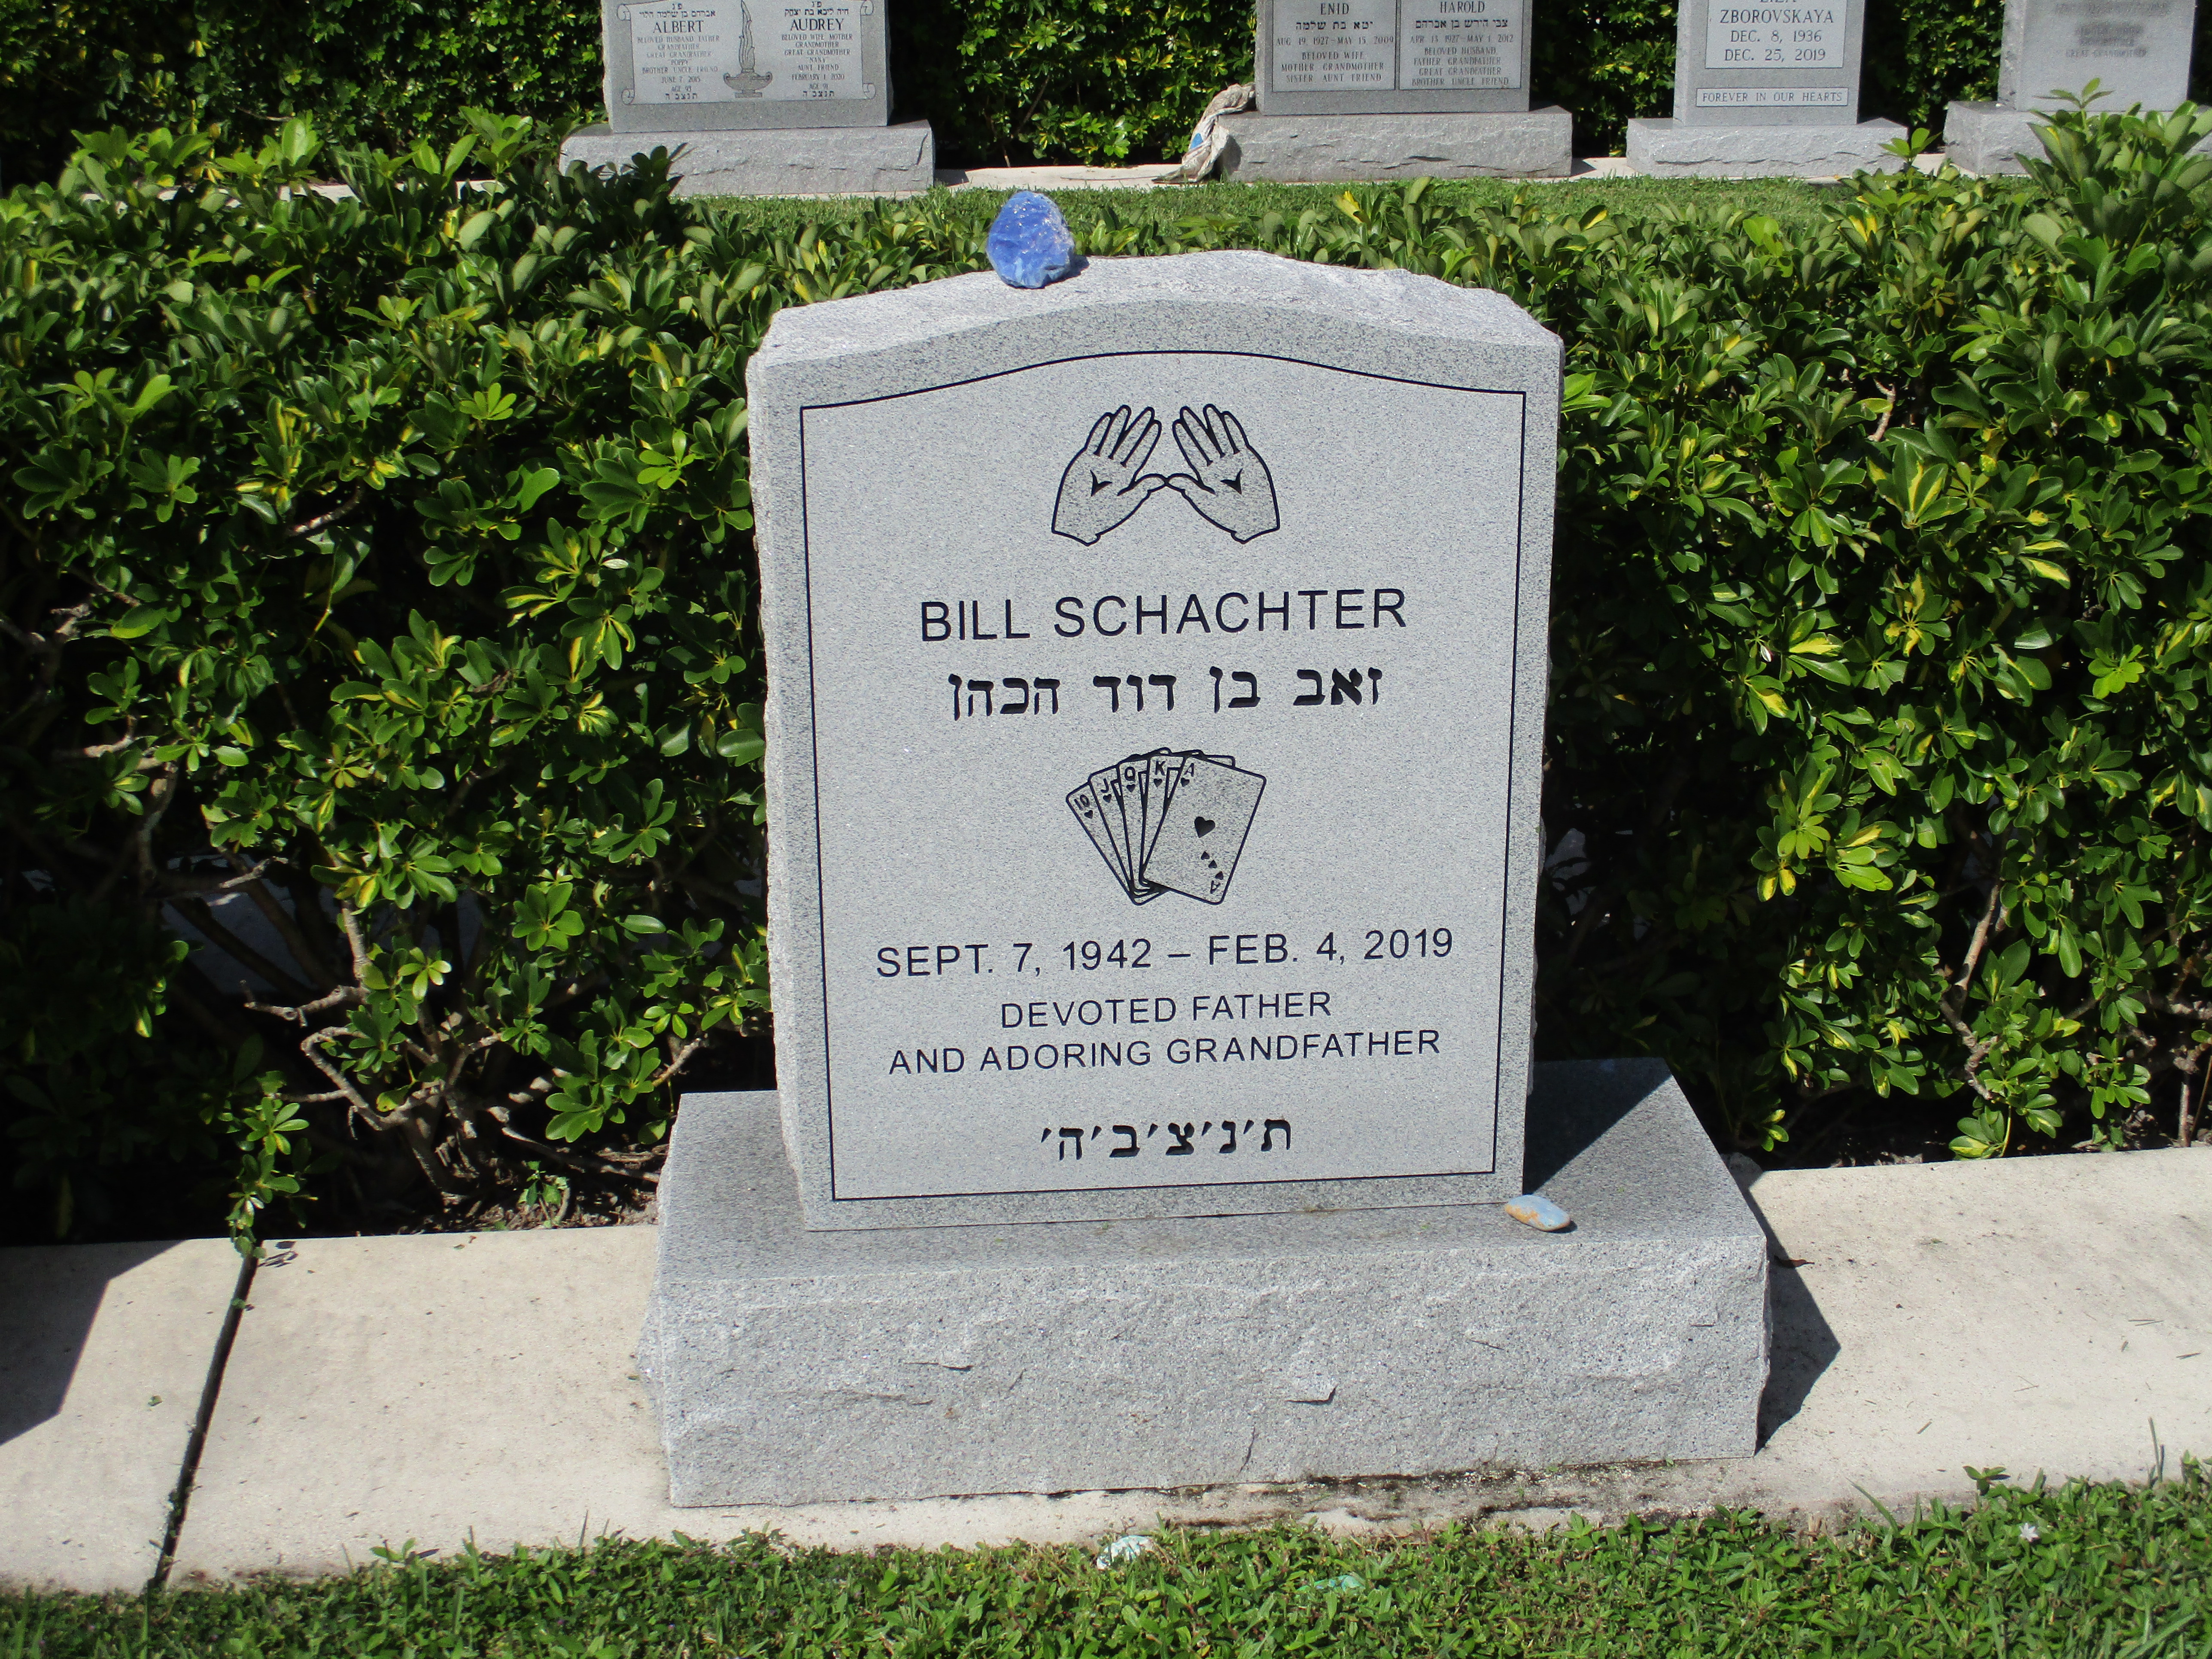 Bill Schachter